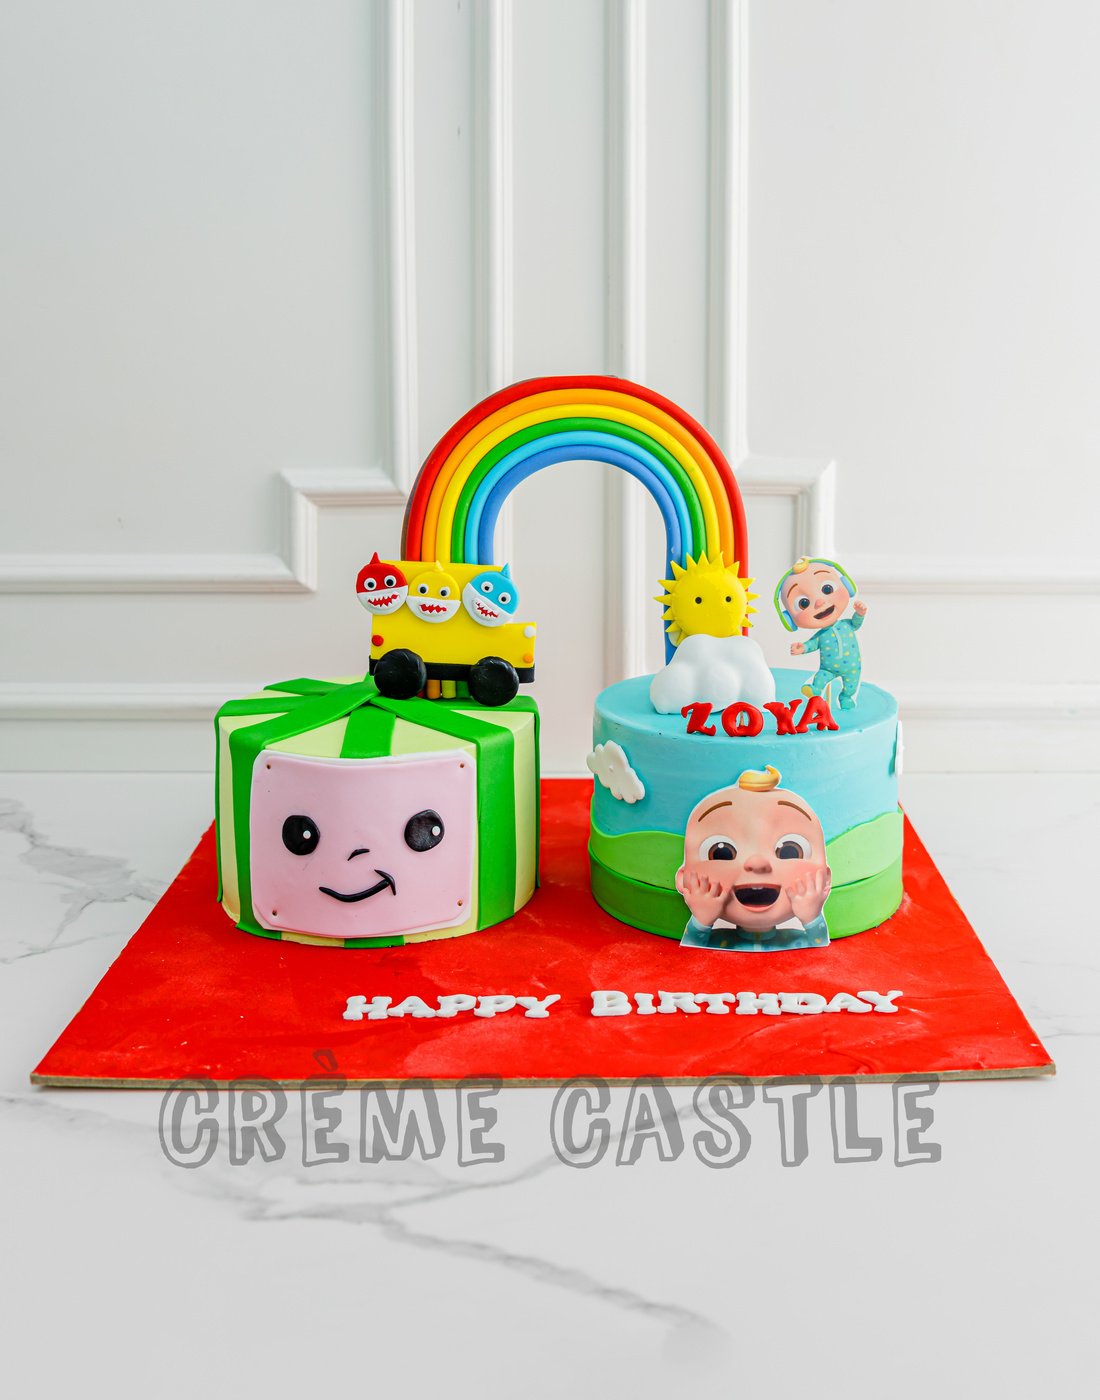 Zoya Chocolate - Happy Birthday - YouTube